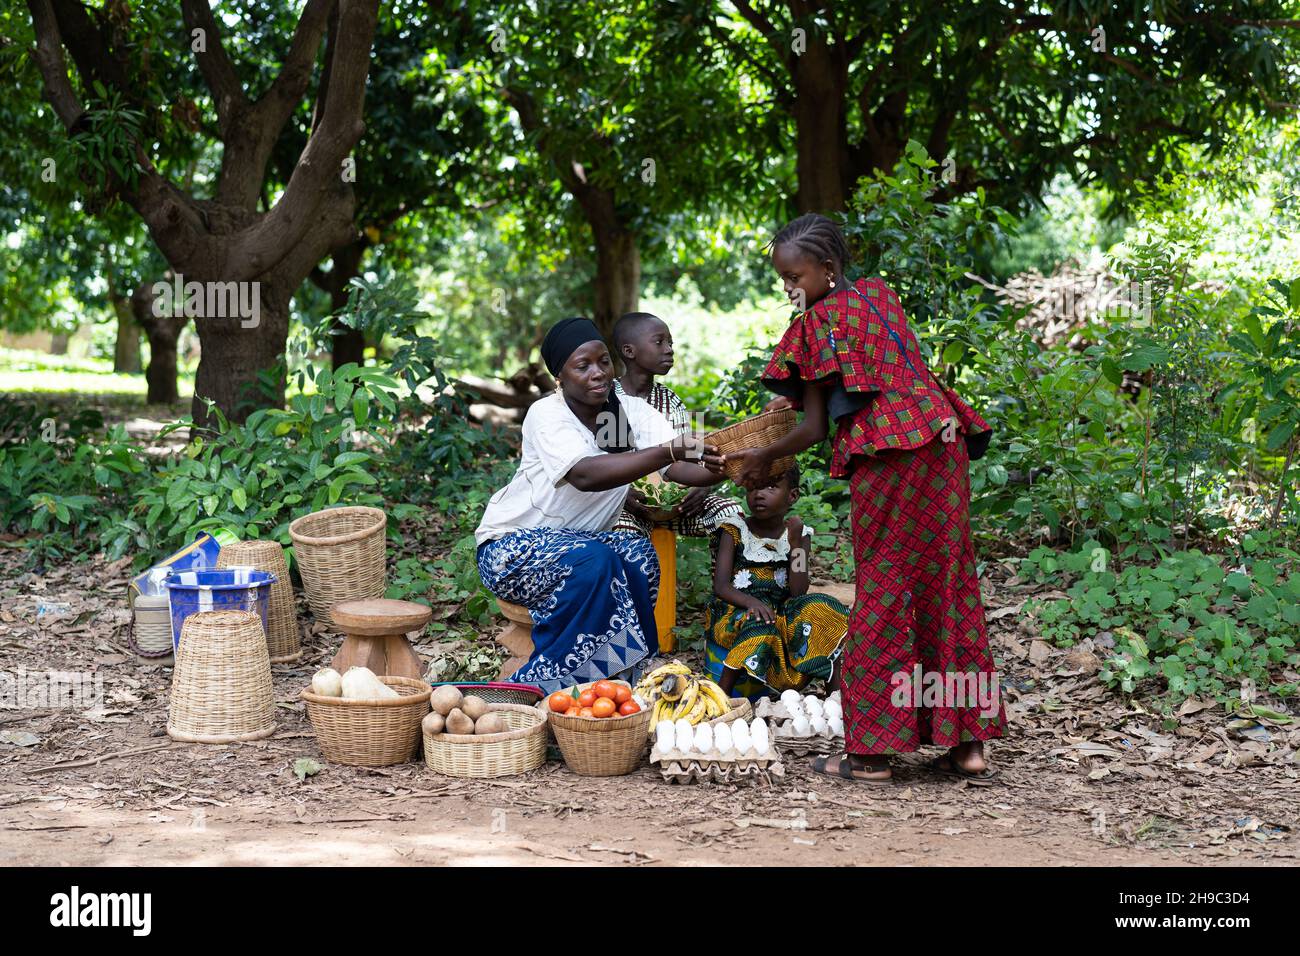 Typische westafrikanische Straßenmarktszene mit Frauen, die Gemüse verkaufen Stockfoto